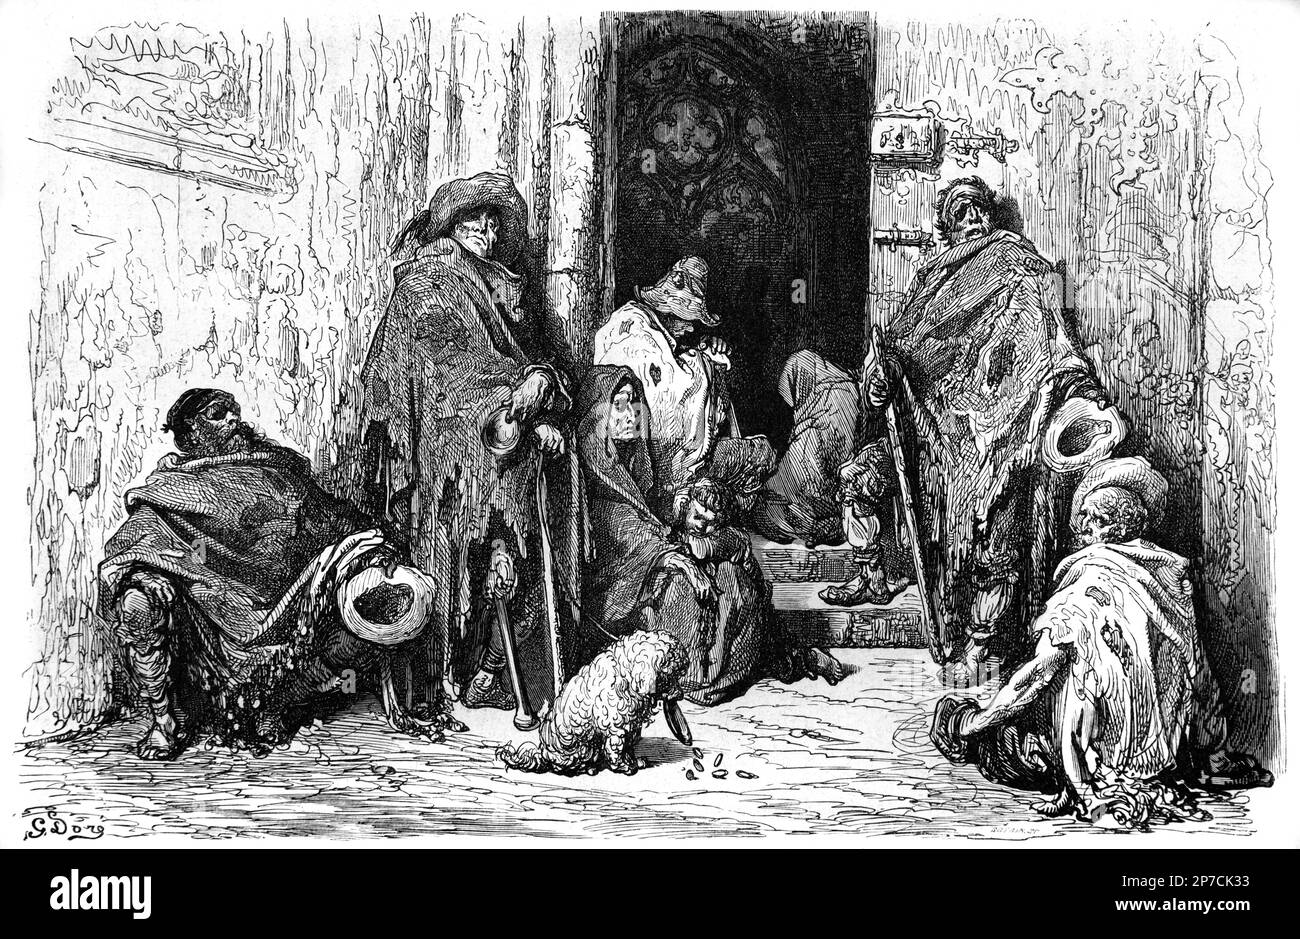 Mendiants à l'extérieur de la cathédrale de Barcelone Espagne. Gravure ou illustration vintage ou historique par Gustave doré 1862 Banque D'Images